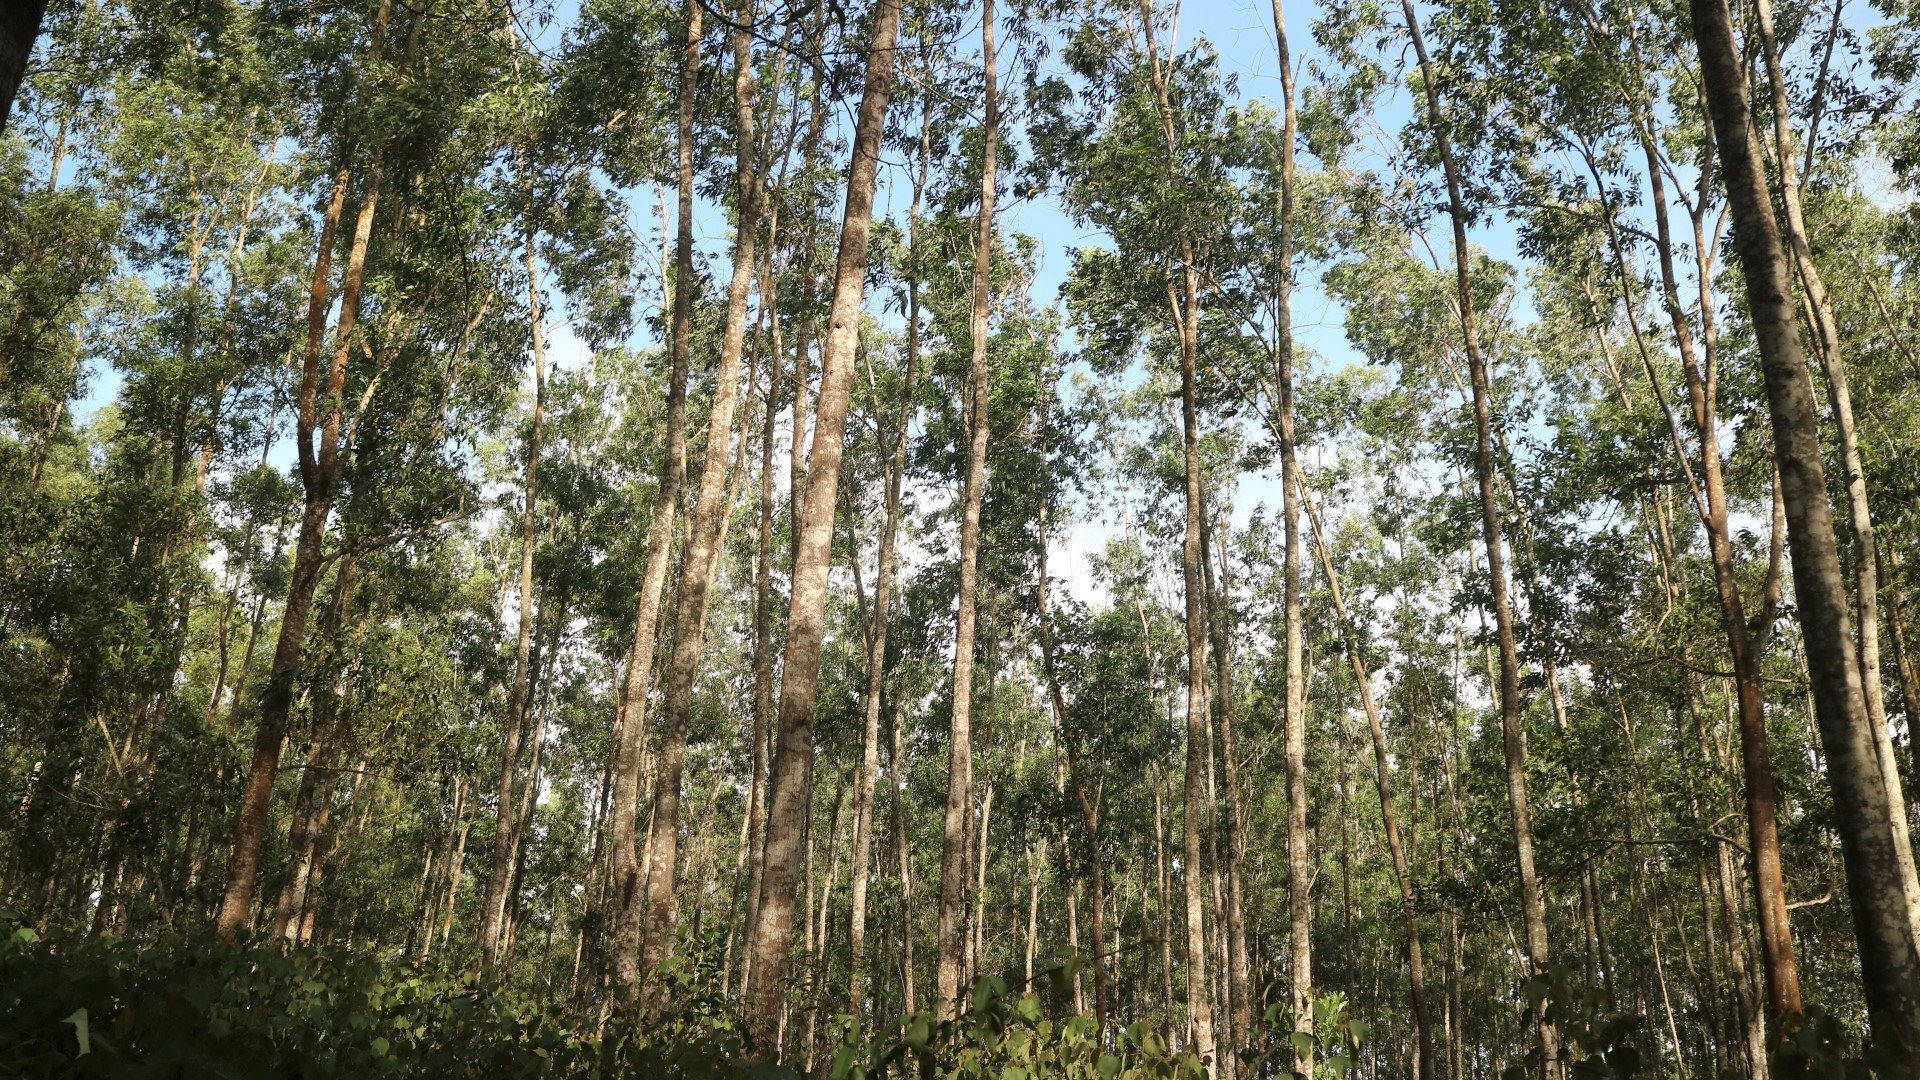 Tính riêng trong 6 tháng đầu năm 2020, Quảng Trị đã xảy ra 4 vụ cháy rừng trồng với diện tích bị cháy gần 24 ha